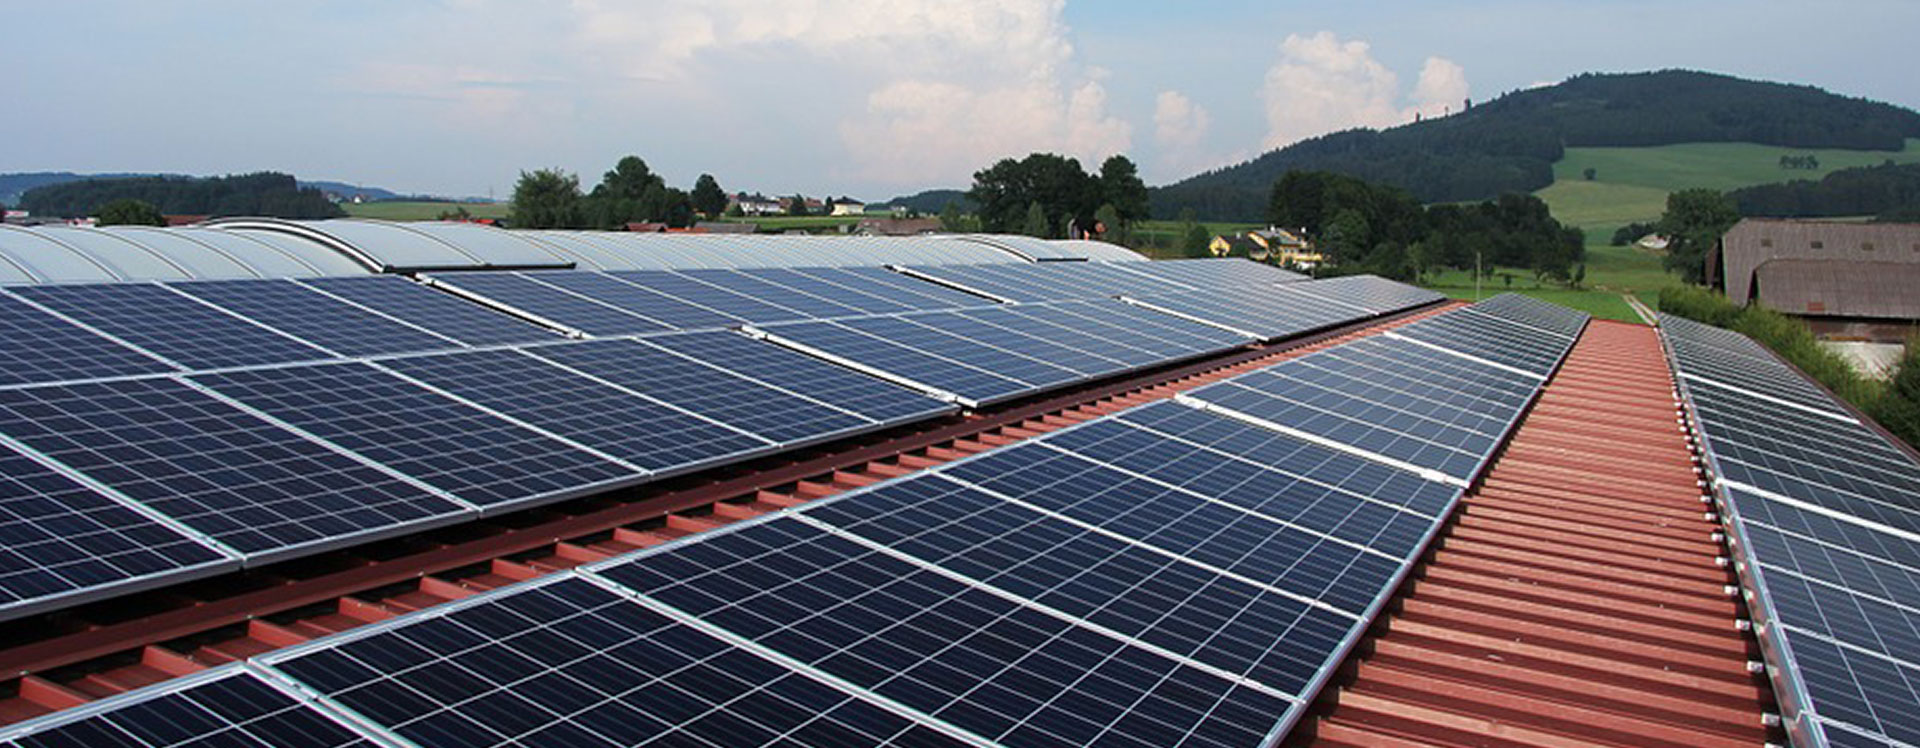 4-reasons-to-install-solar-panels-allcott-associates